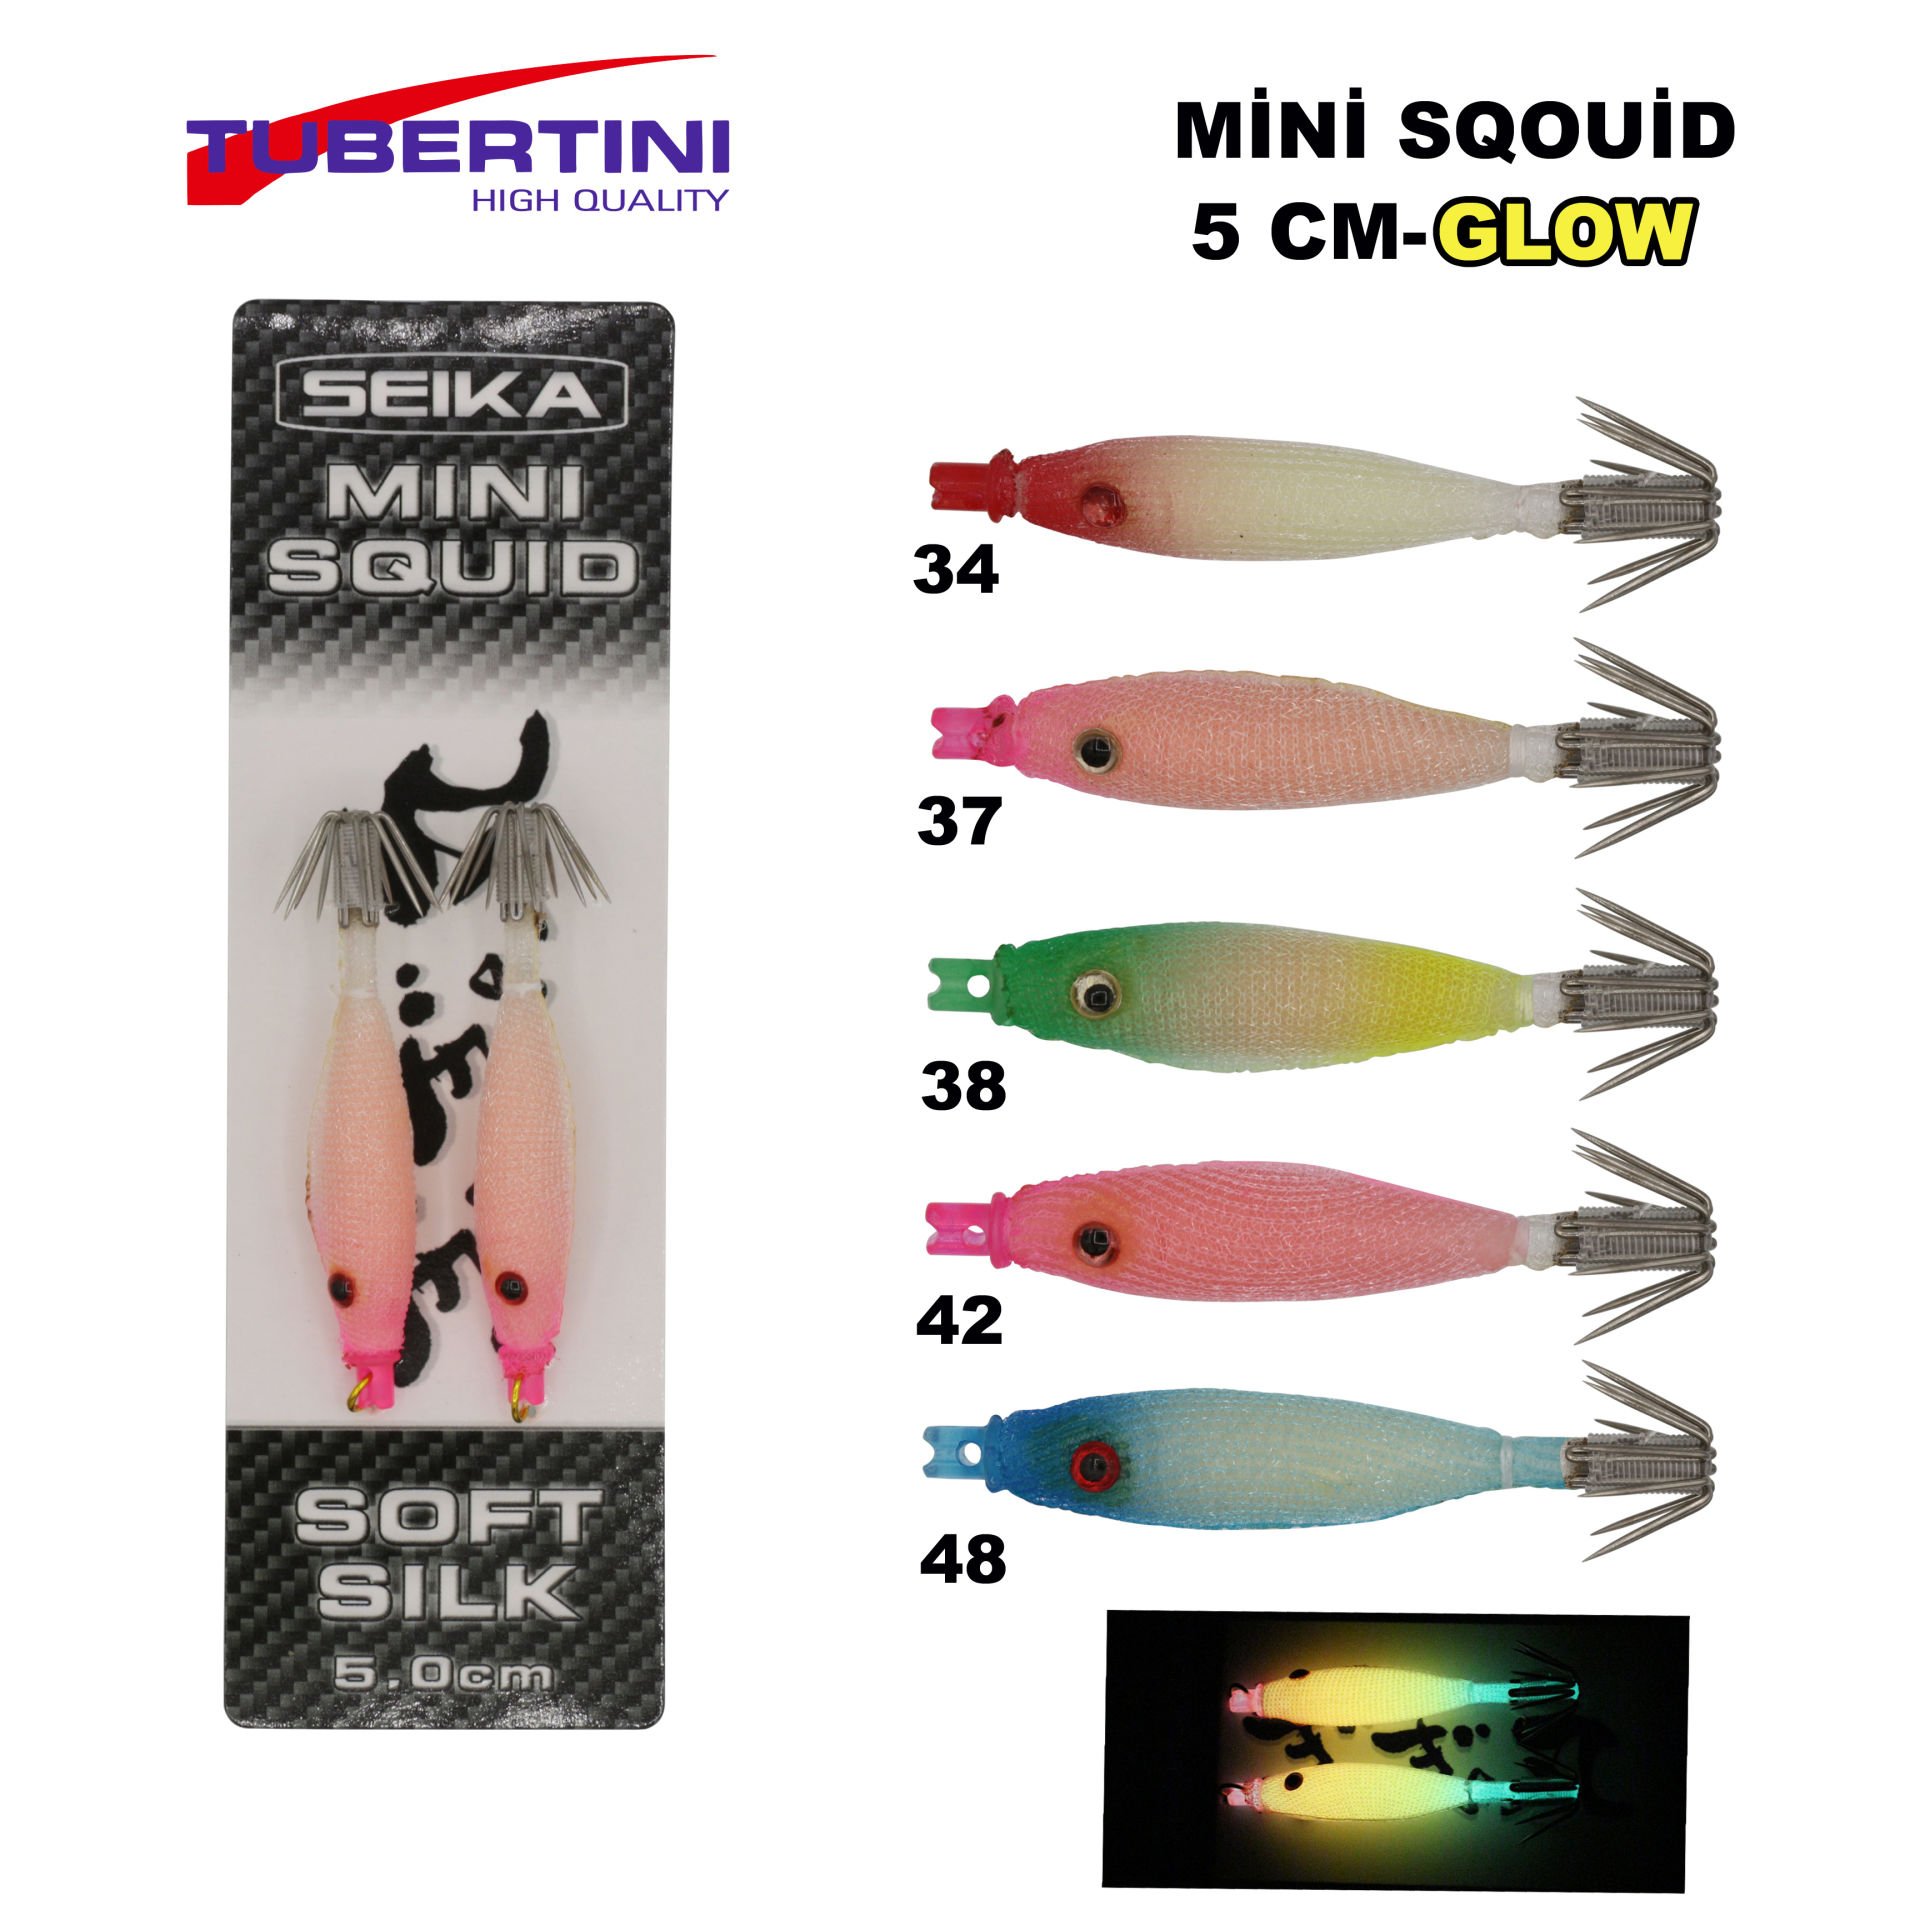 Seika Mini Squid Soft Silk 5,0 Cm 2li